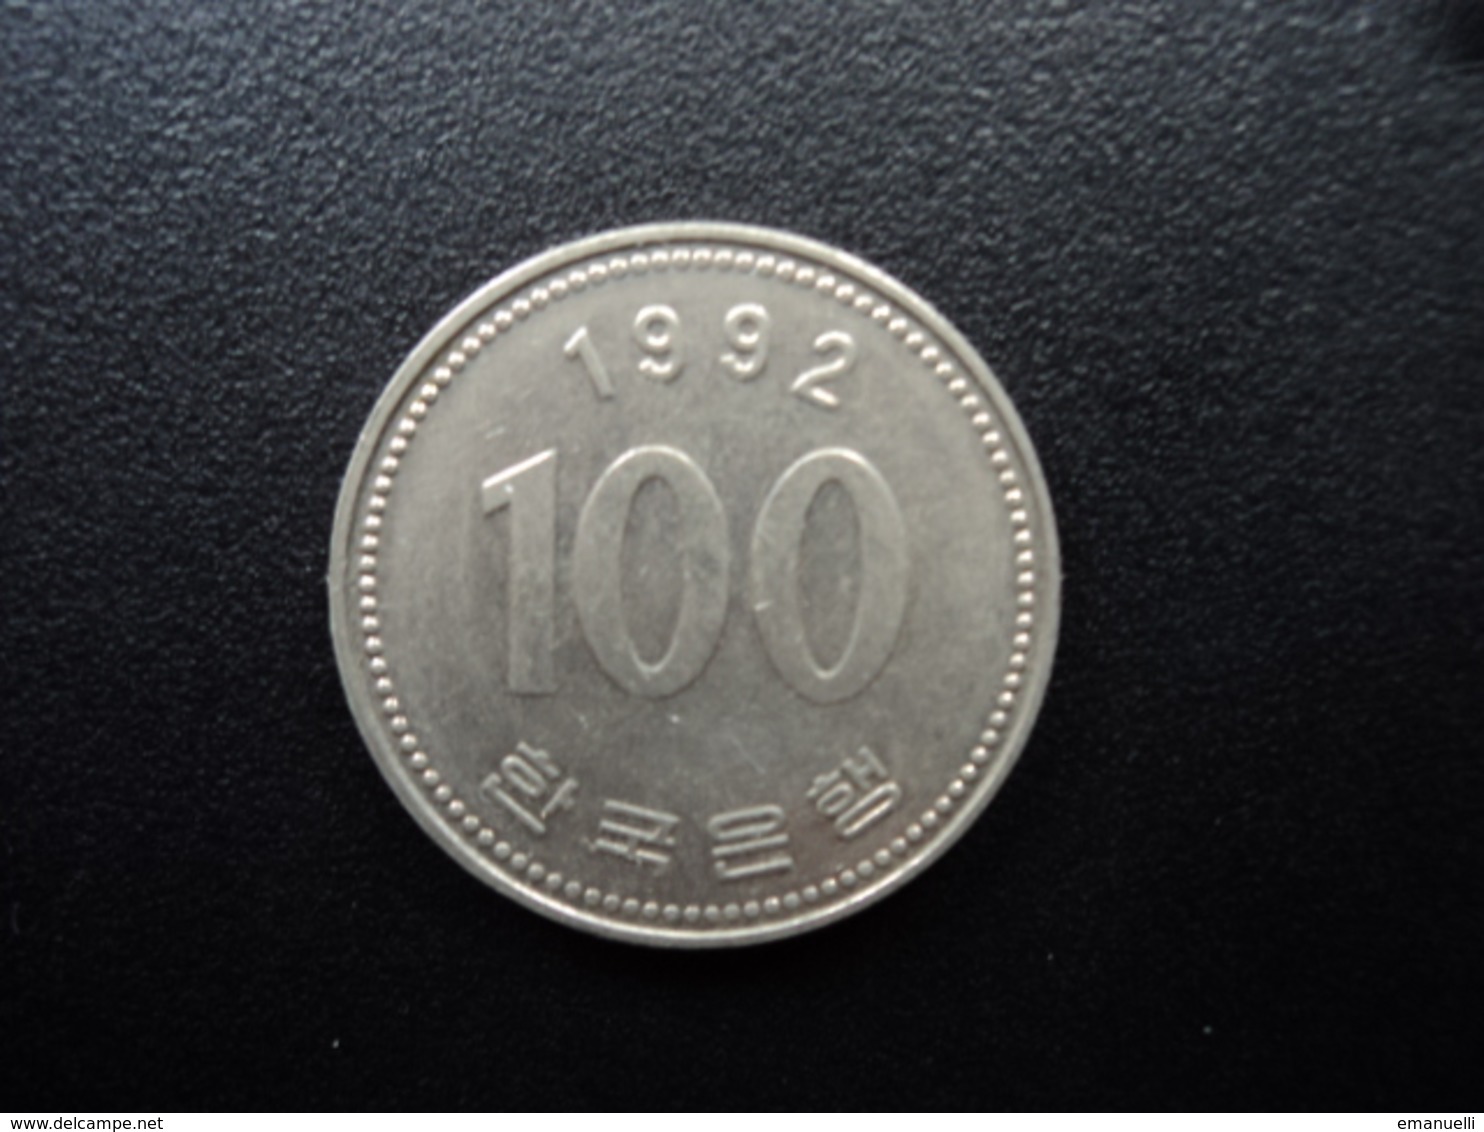 CORÉE DU SUD : 100 WON   1992   KM 35.2    SUP(+) - Korea, South